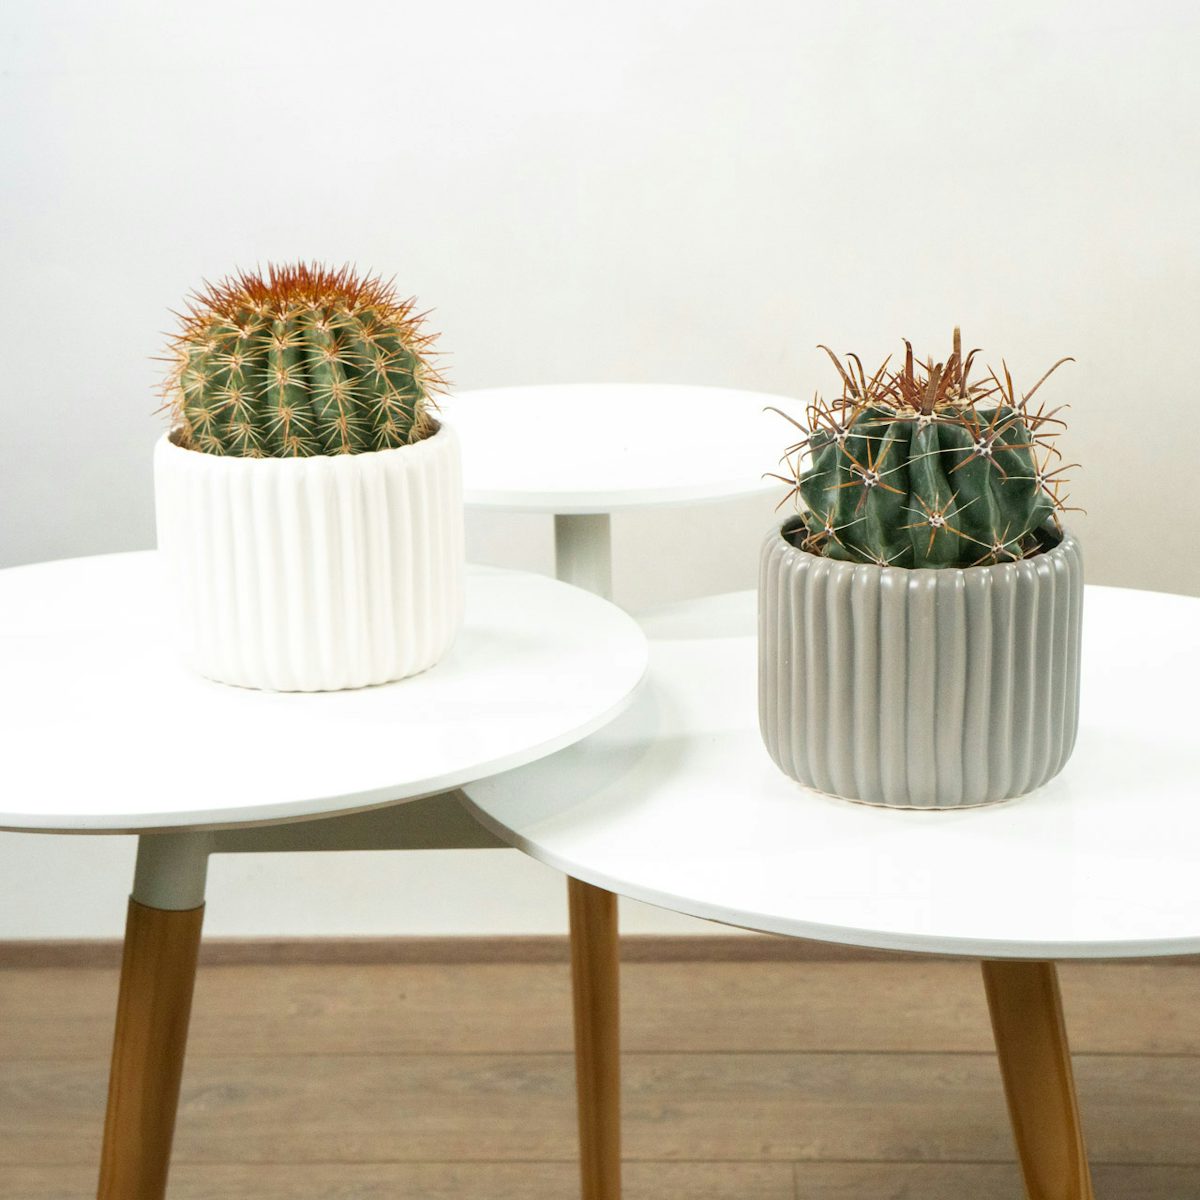 Duo de Cactus con Maceteros